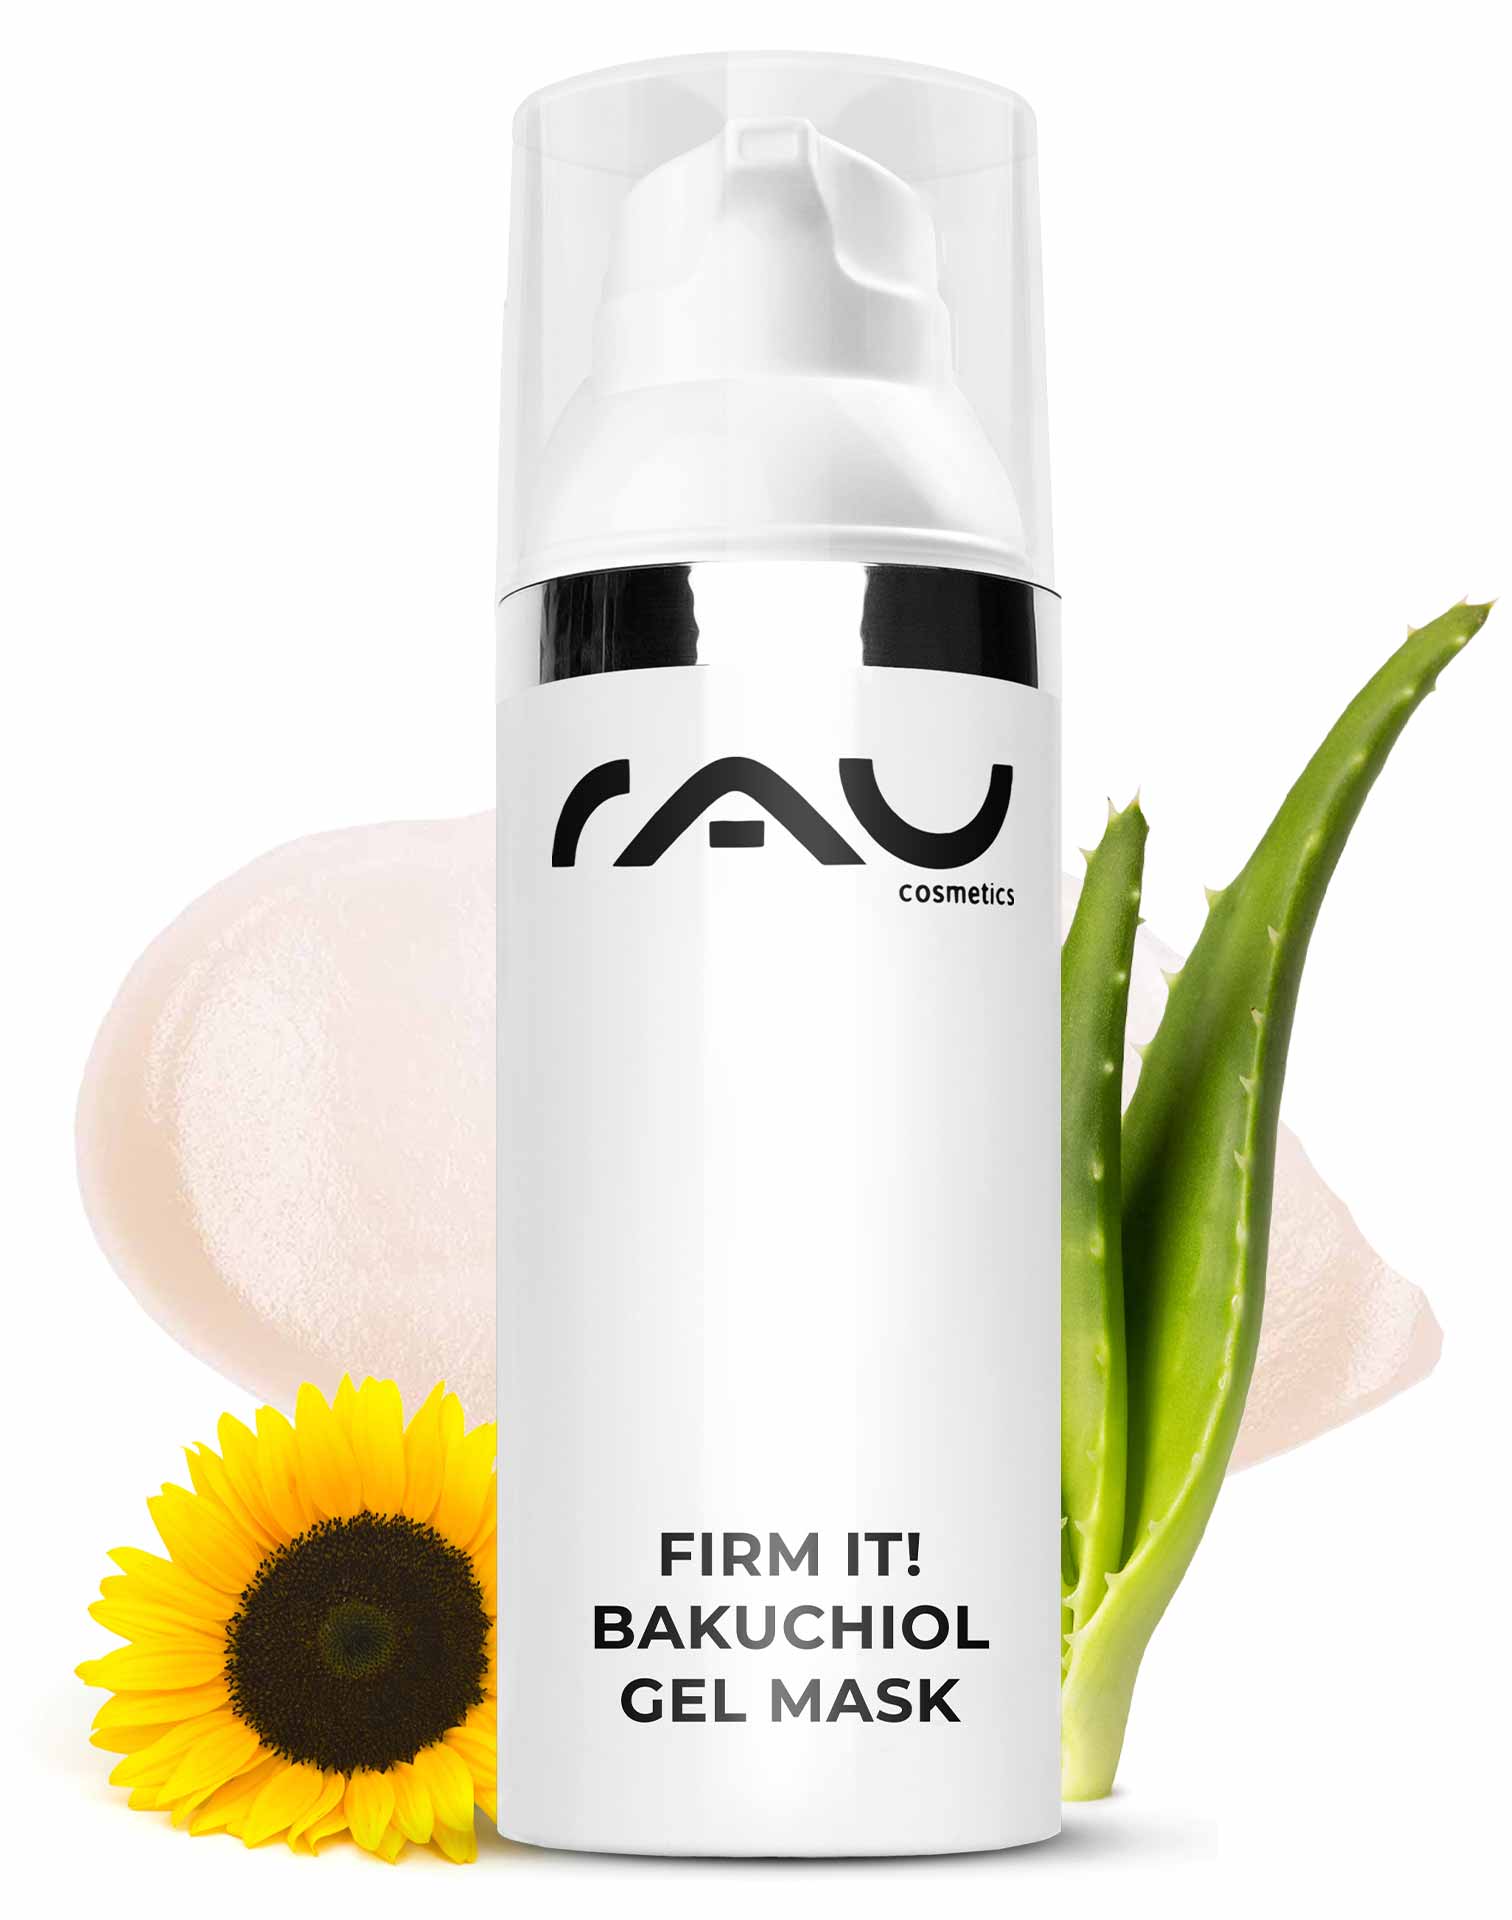 RAU firm it! Bakuchiol Gel Mask 50 ml - refreshing anti aging gel mask